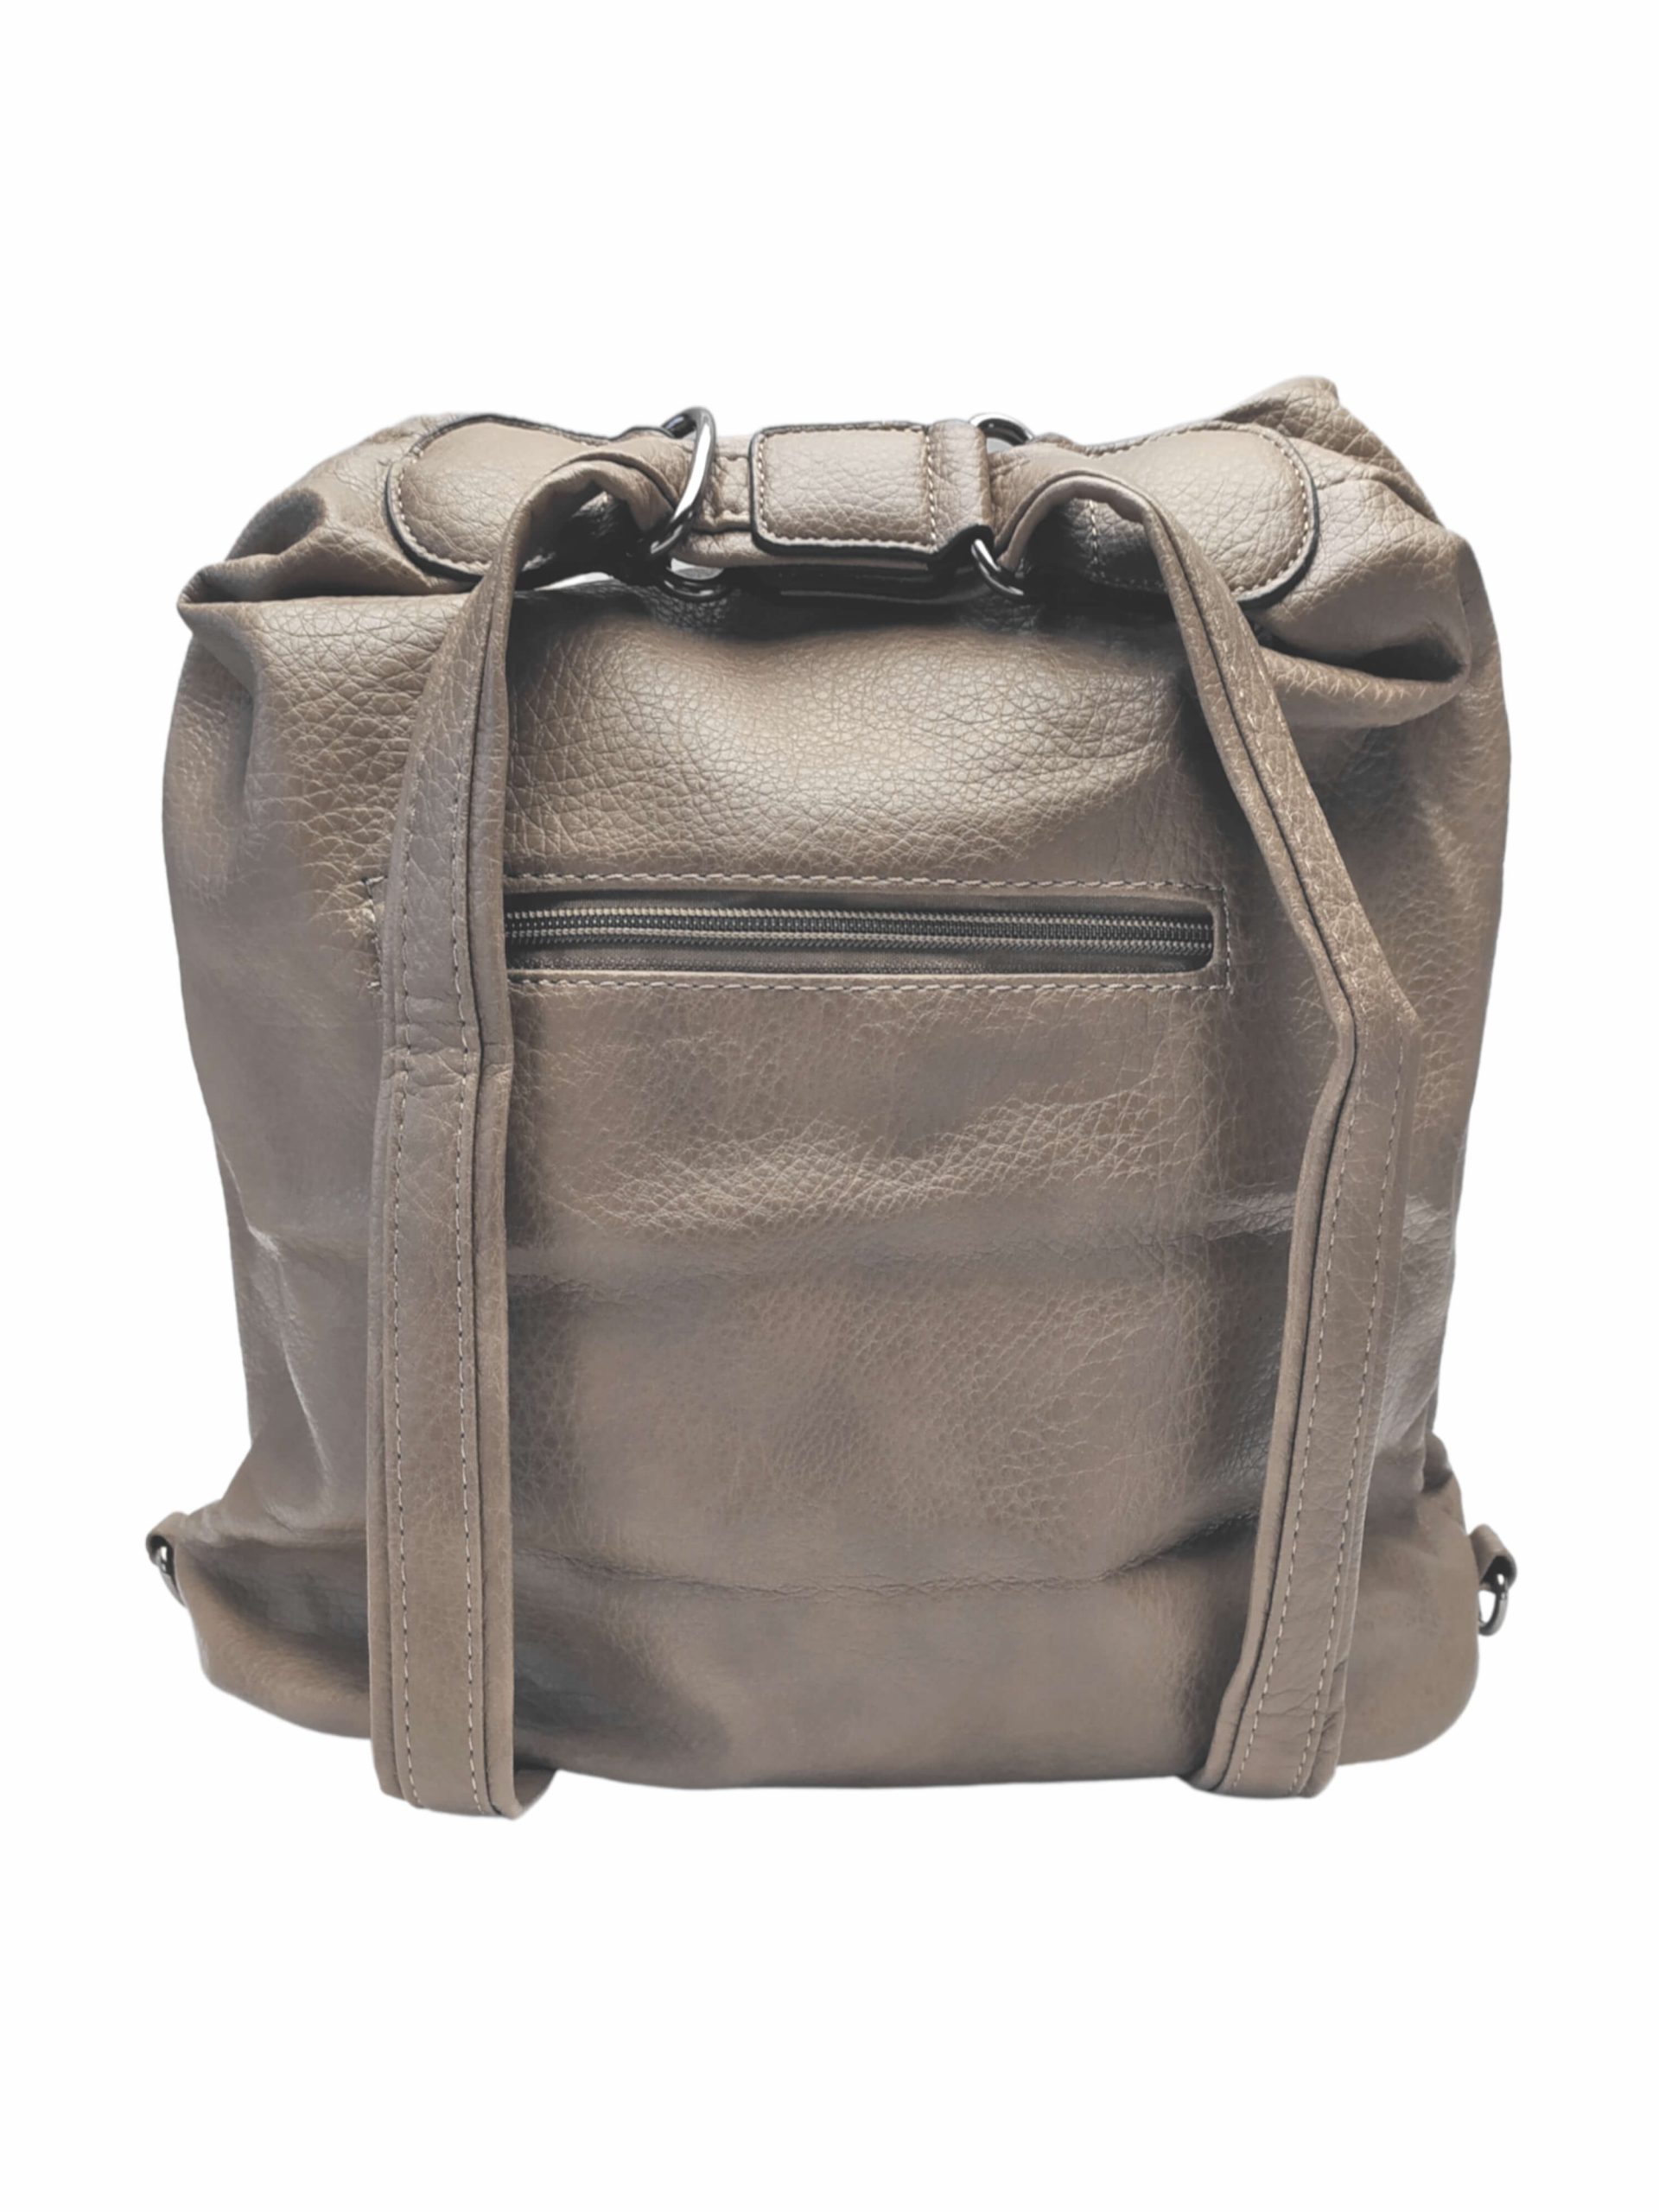 Velký šedohnědý kabelko-batoh 2v1 s praktickými kapsami, Miss Moda, 980953, zadní strana kabelko-batohu 2v1 s popruhy